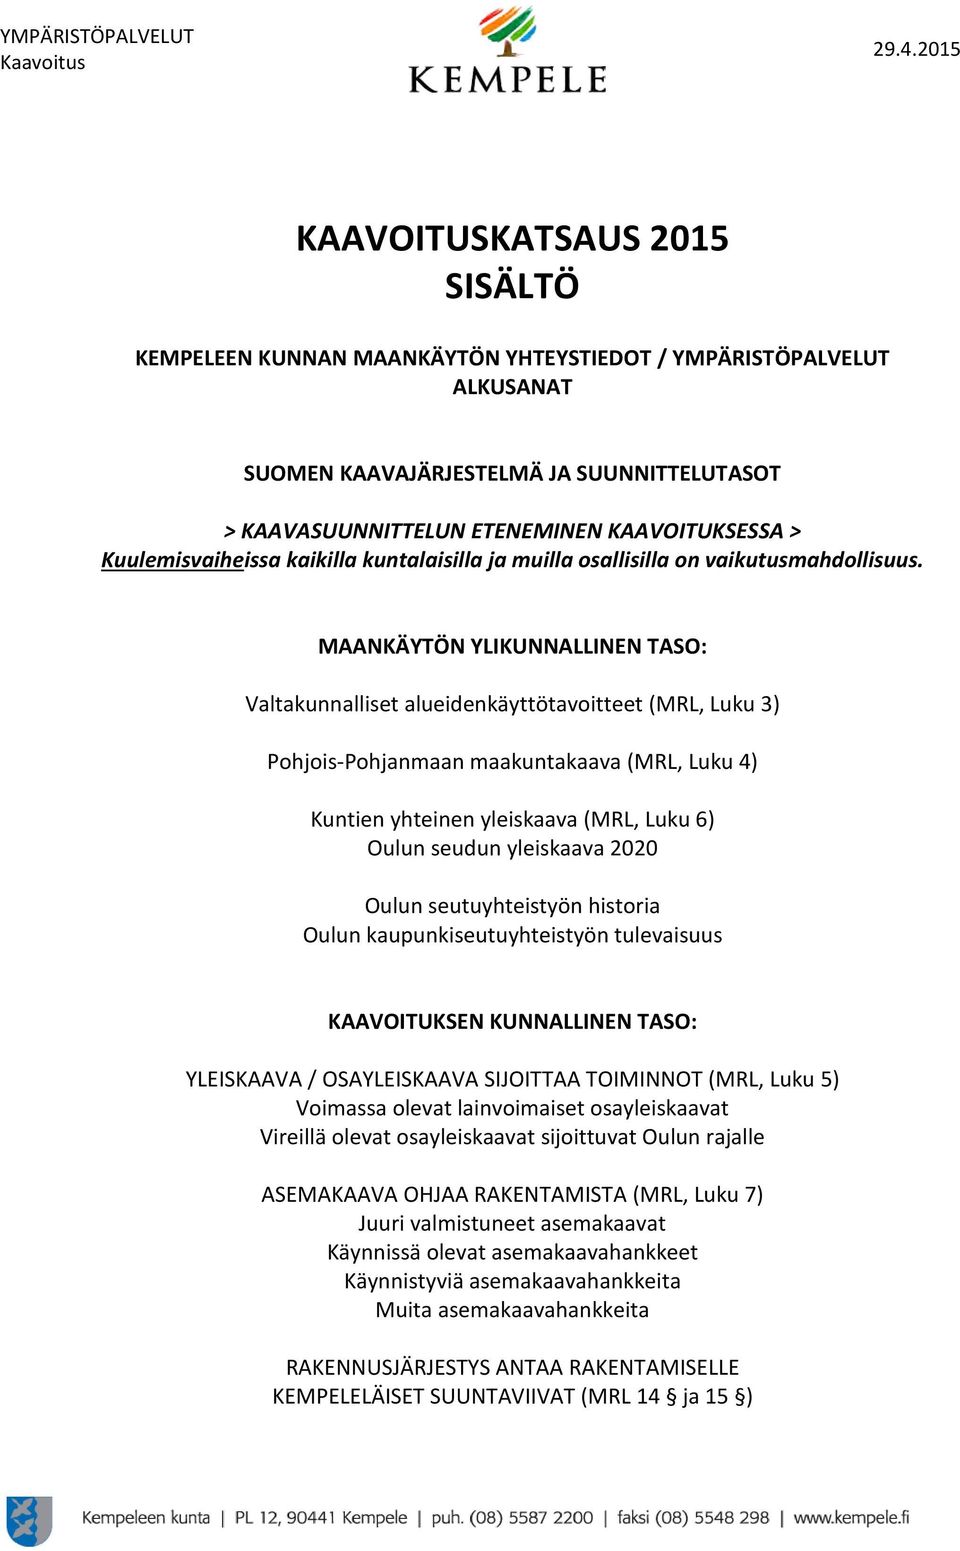 MAANKÄYTÖN YLIKUNNALLINEN TASO: Valtakunnalliset alueidenkäyttötavoitteet (MRL, Luku 3) Pohjois-Pohjanmaan maakuntakaava (MRL, Luku 4) Kuntien yhteinen yleiskaava (MRL, Luku 6) Oulun seudun